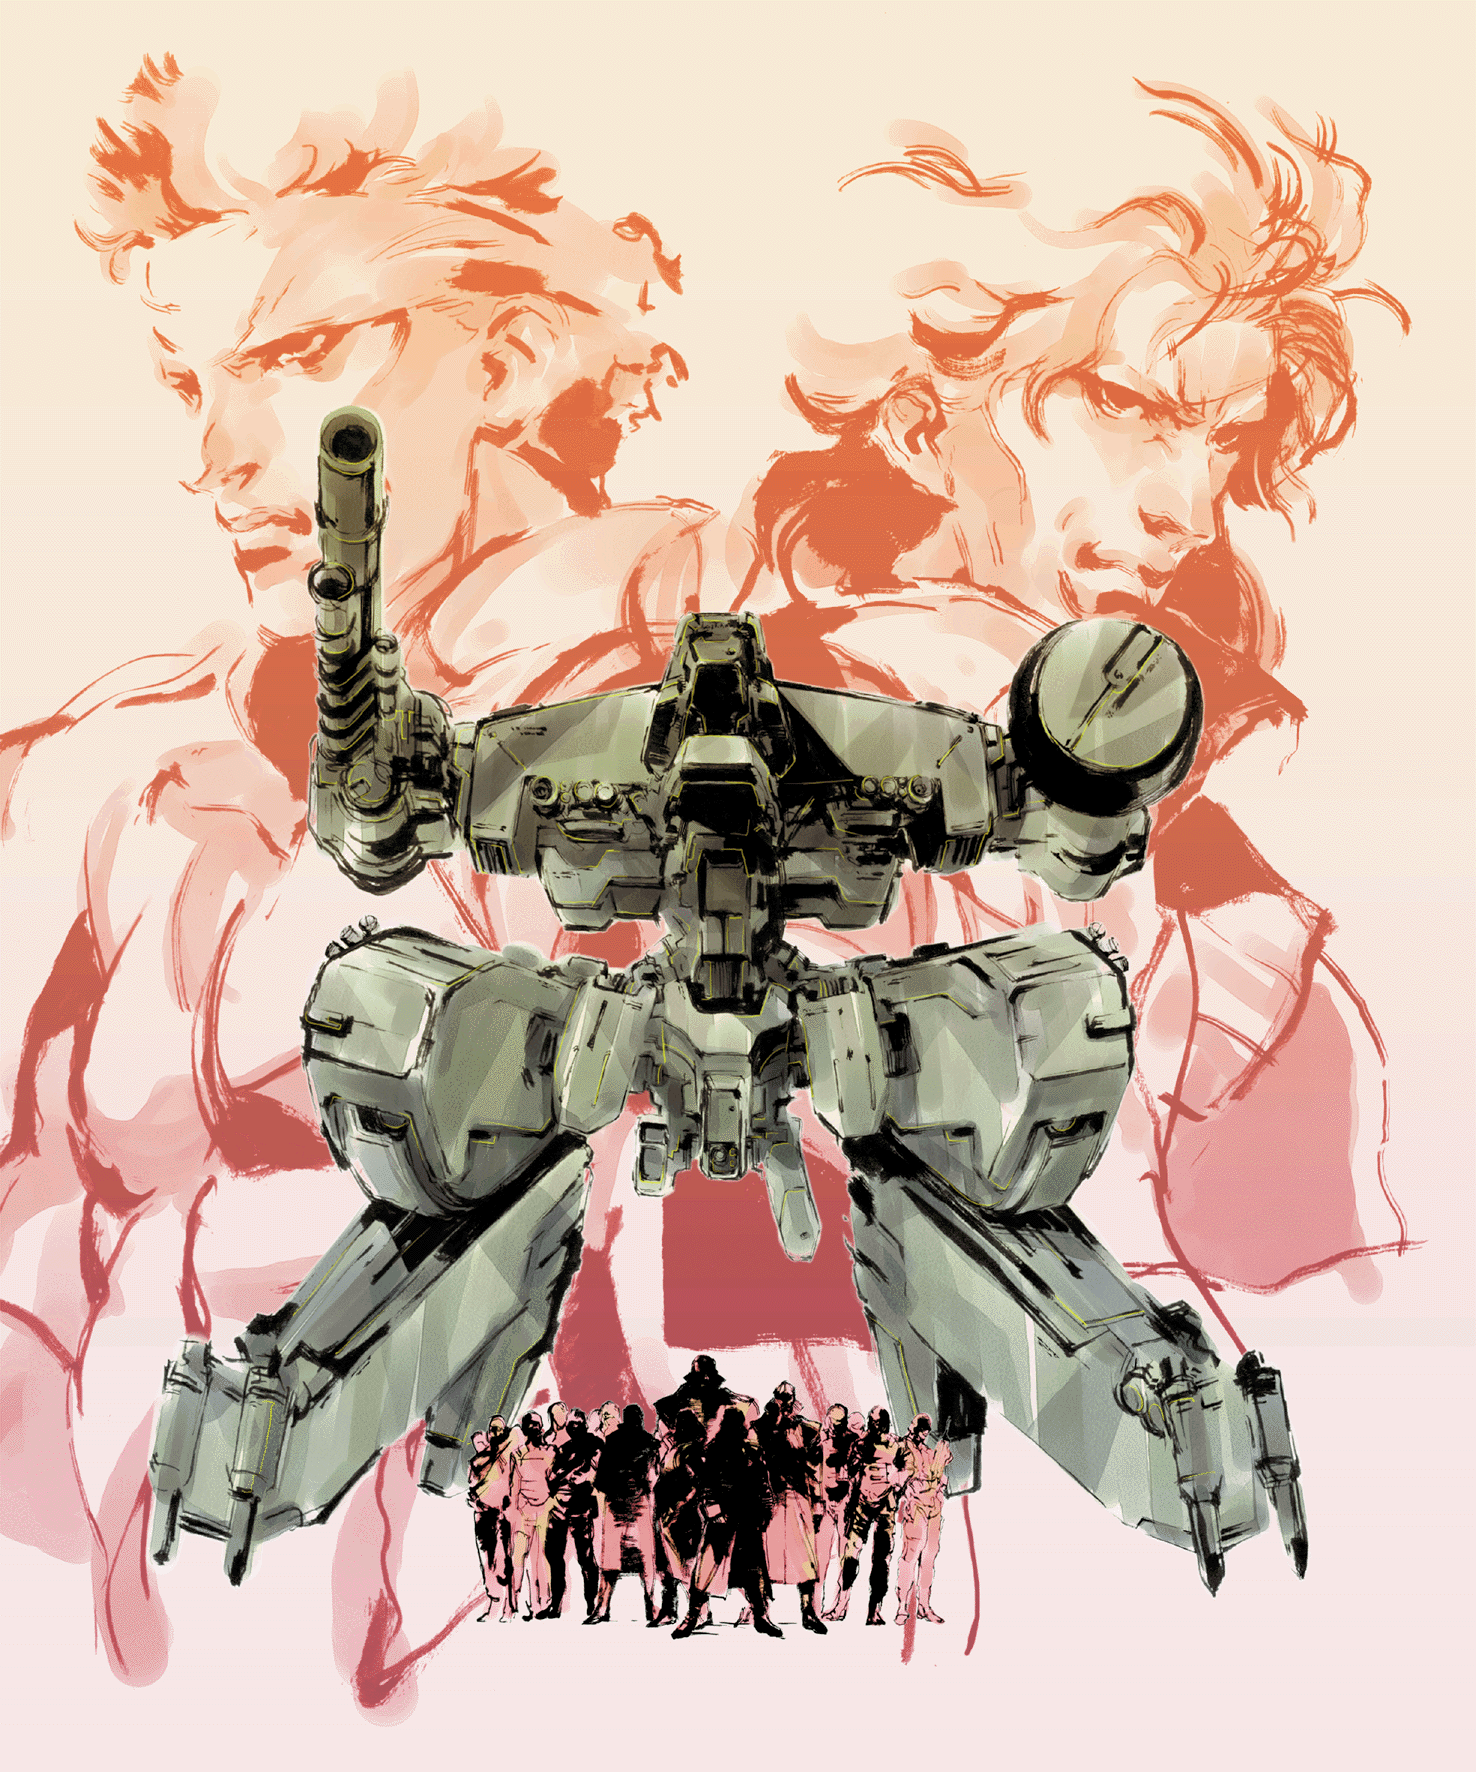 Raiden (Metal Gear), Versus Compendium Wiki